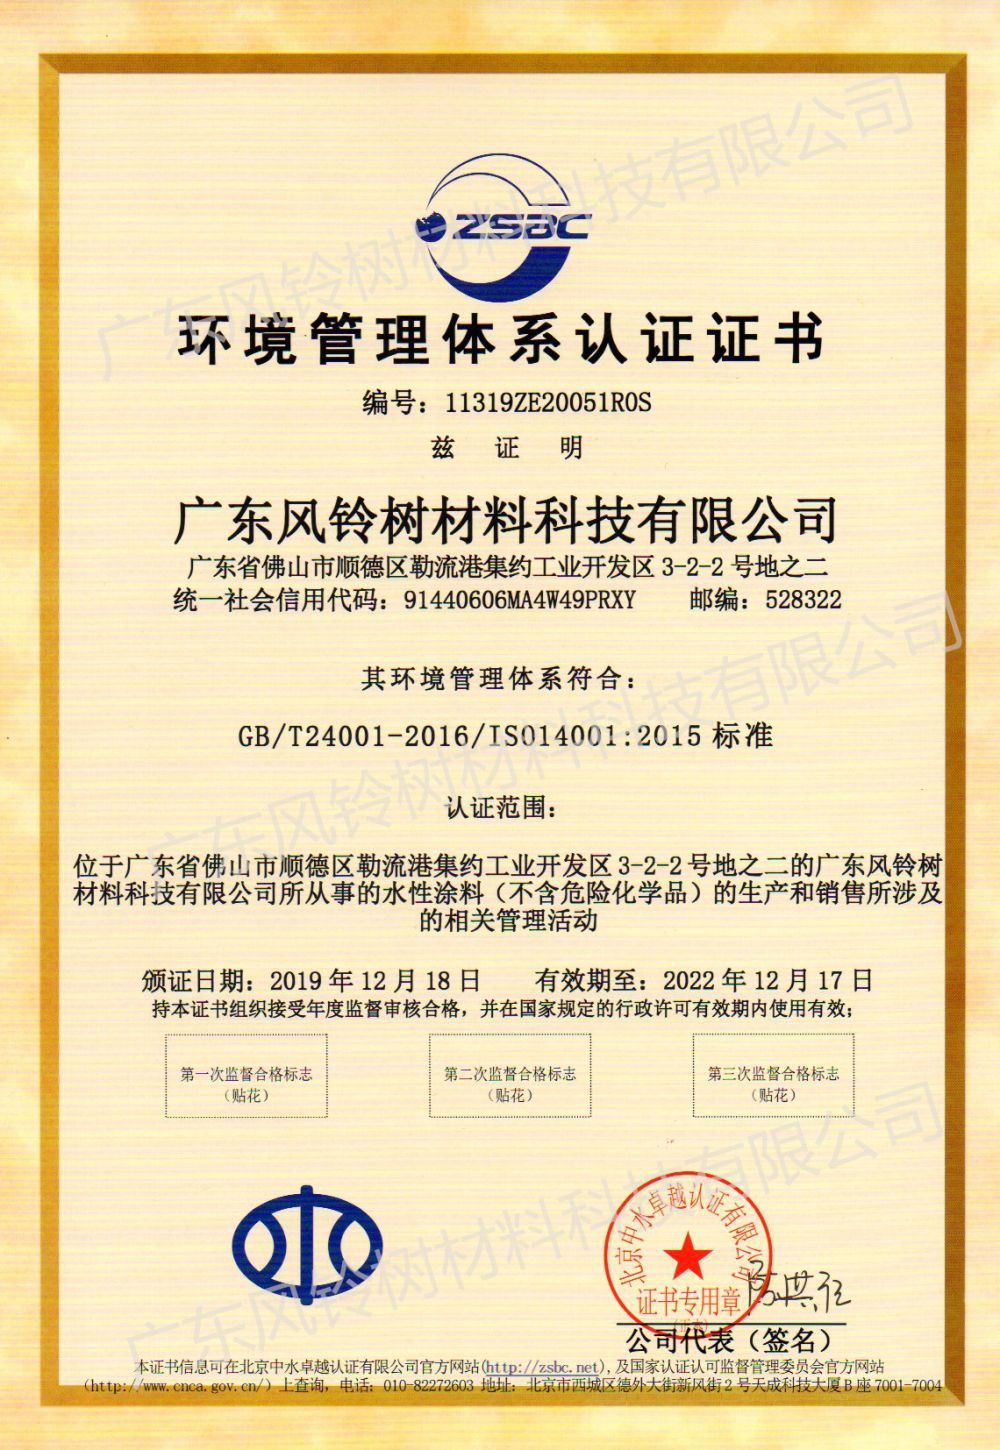 Сертифициране на системата за управление на околната среда